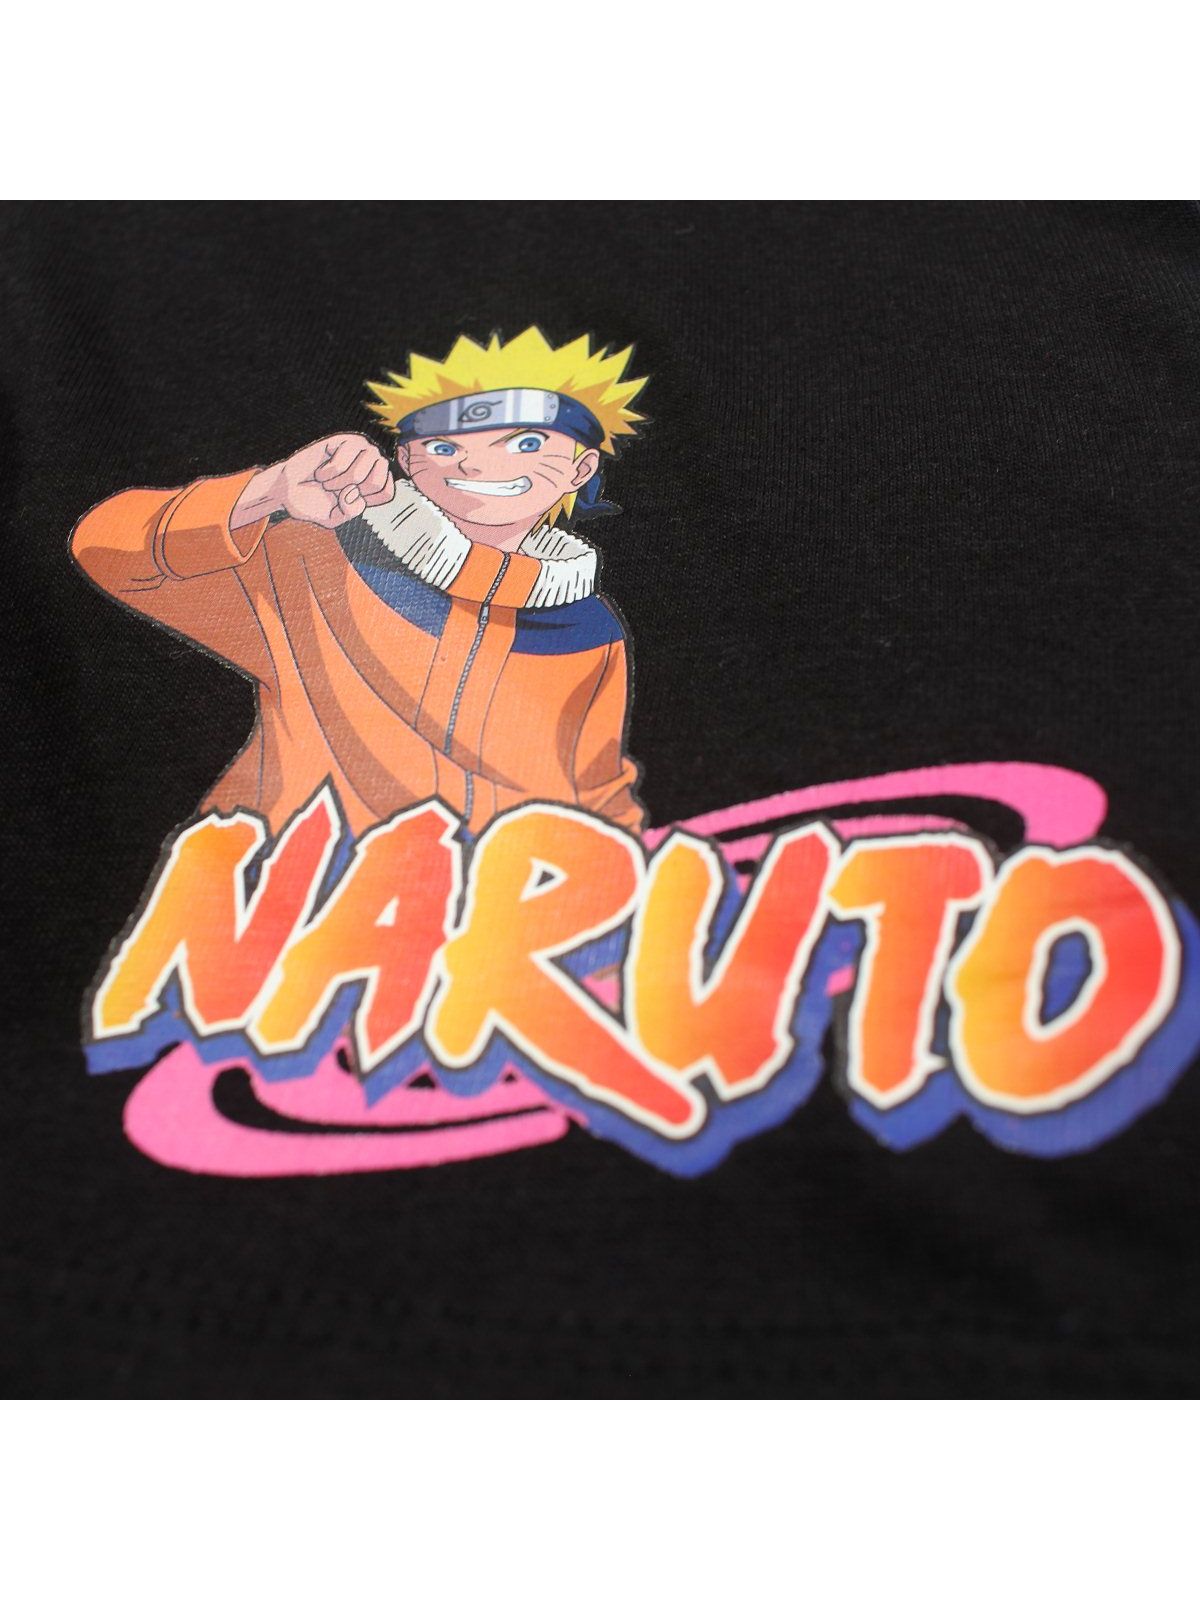 Naruto-set.